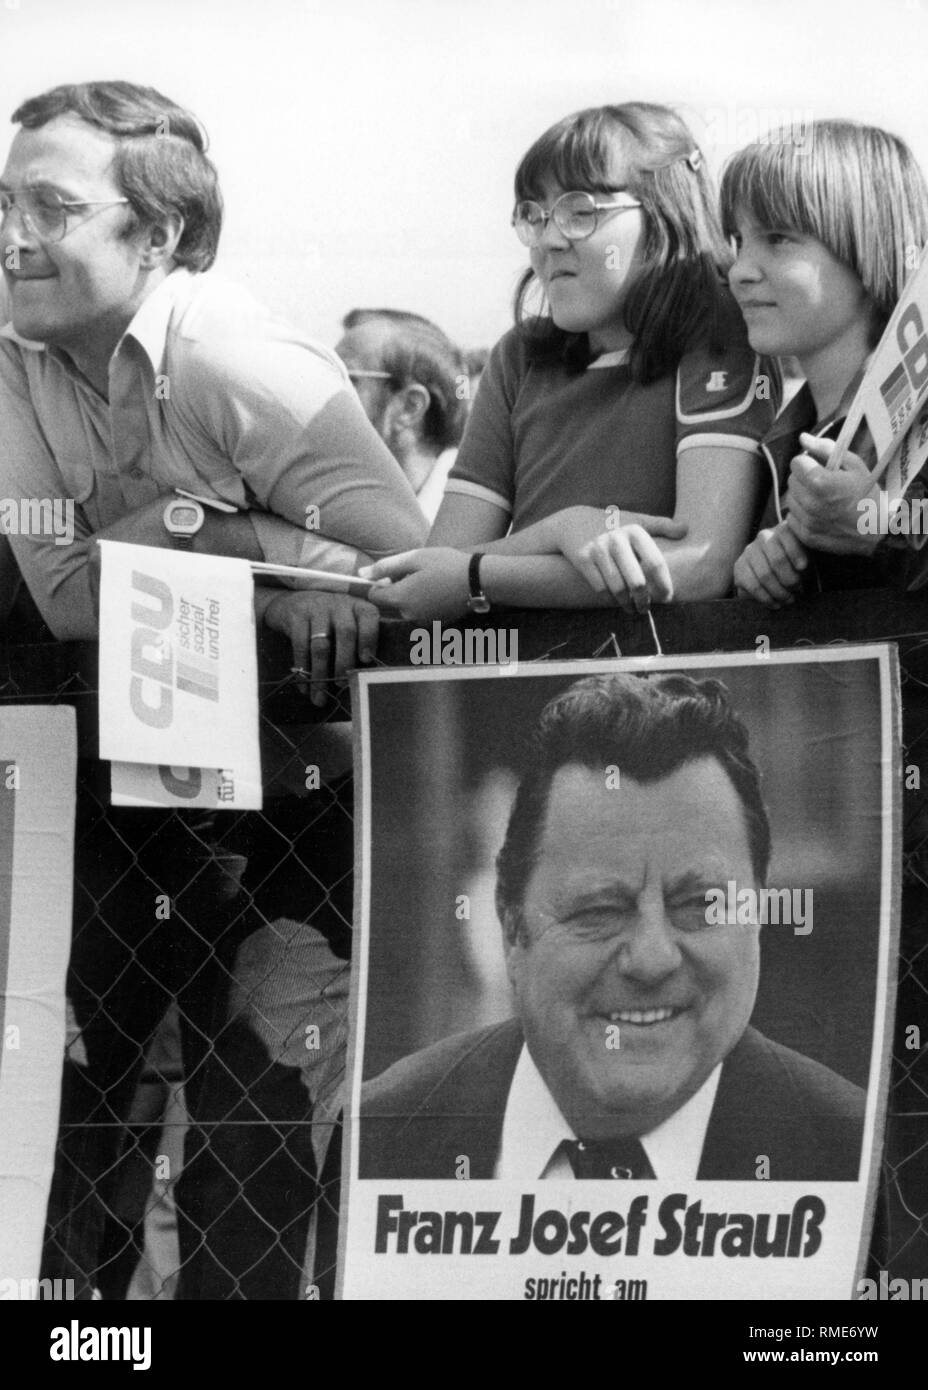 Dieses Foto zeigt eine Familie, mit verschiedenen Wahlen Werbemittel Zubehör ausgestattet, in der das Publikum auf einer Wahlkampfveranstaltung der Union. Auf dem Zaun hängt ein Plakat gibt bekannt, dass das Erscheinungsbild der Kanzlerkandidat der Union, CSU, Franz Josef Strauß. Stockfoto